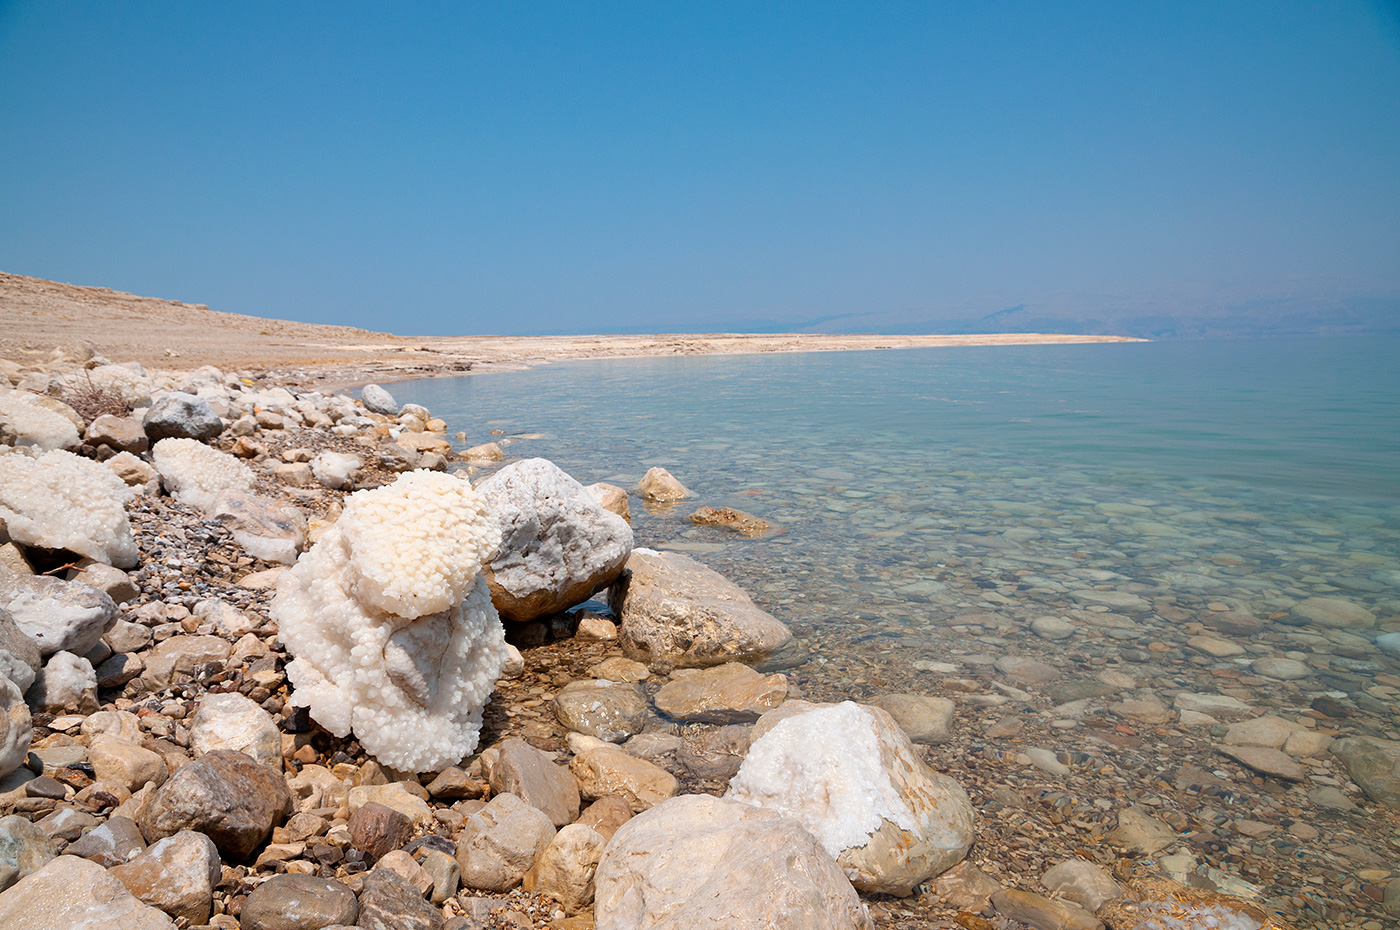 The Dead-Sea